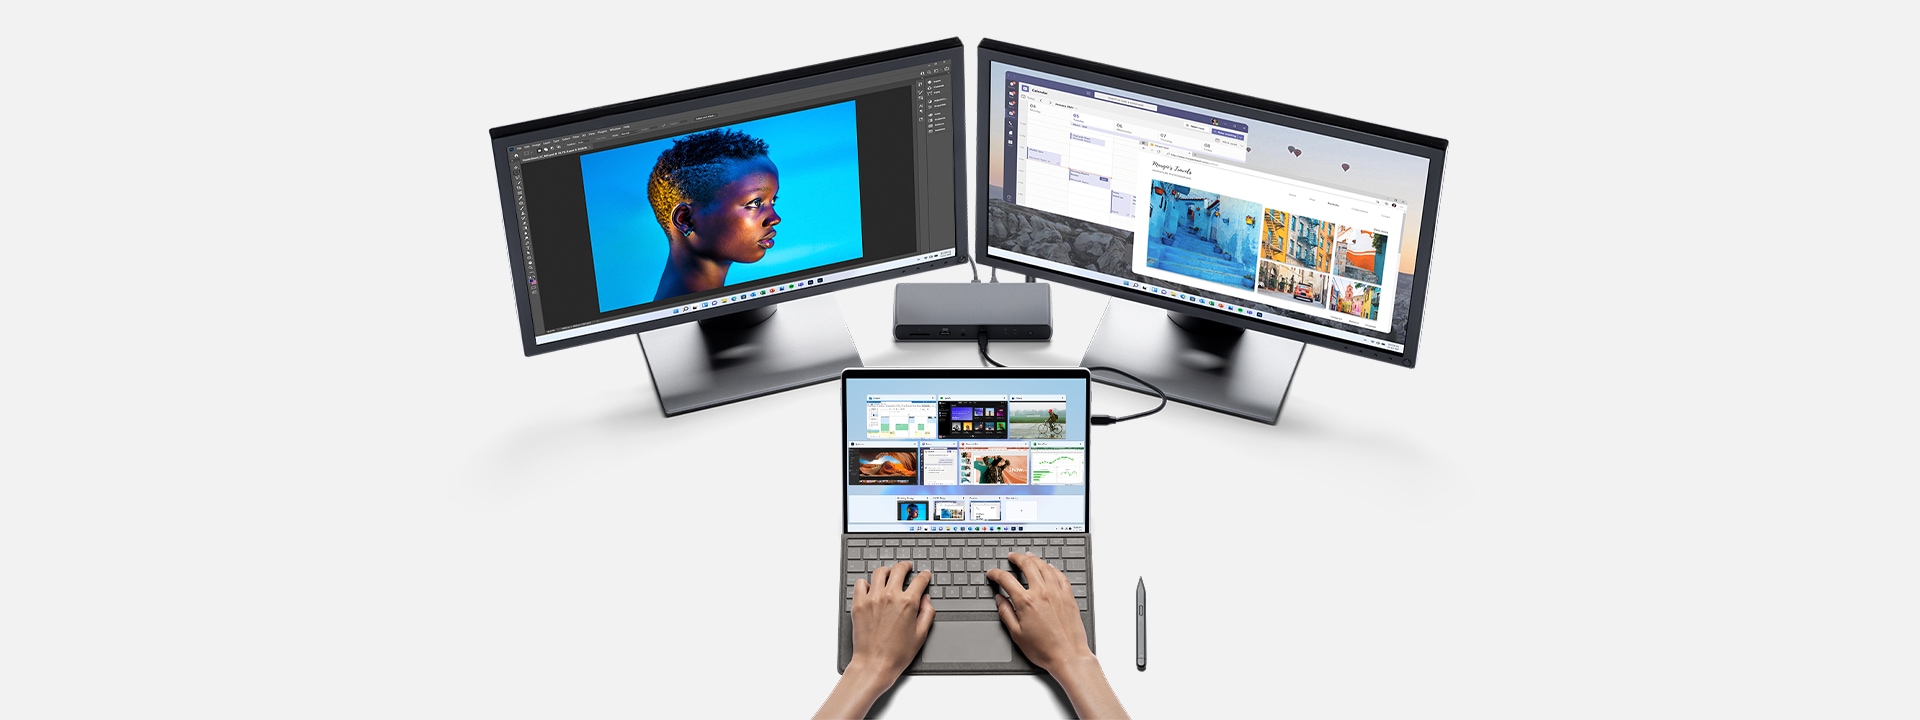 Komputer Surface Pro 8 podłączony do stacji roboczej z wyświetloną aplikacją Photoshop